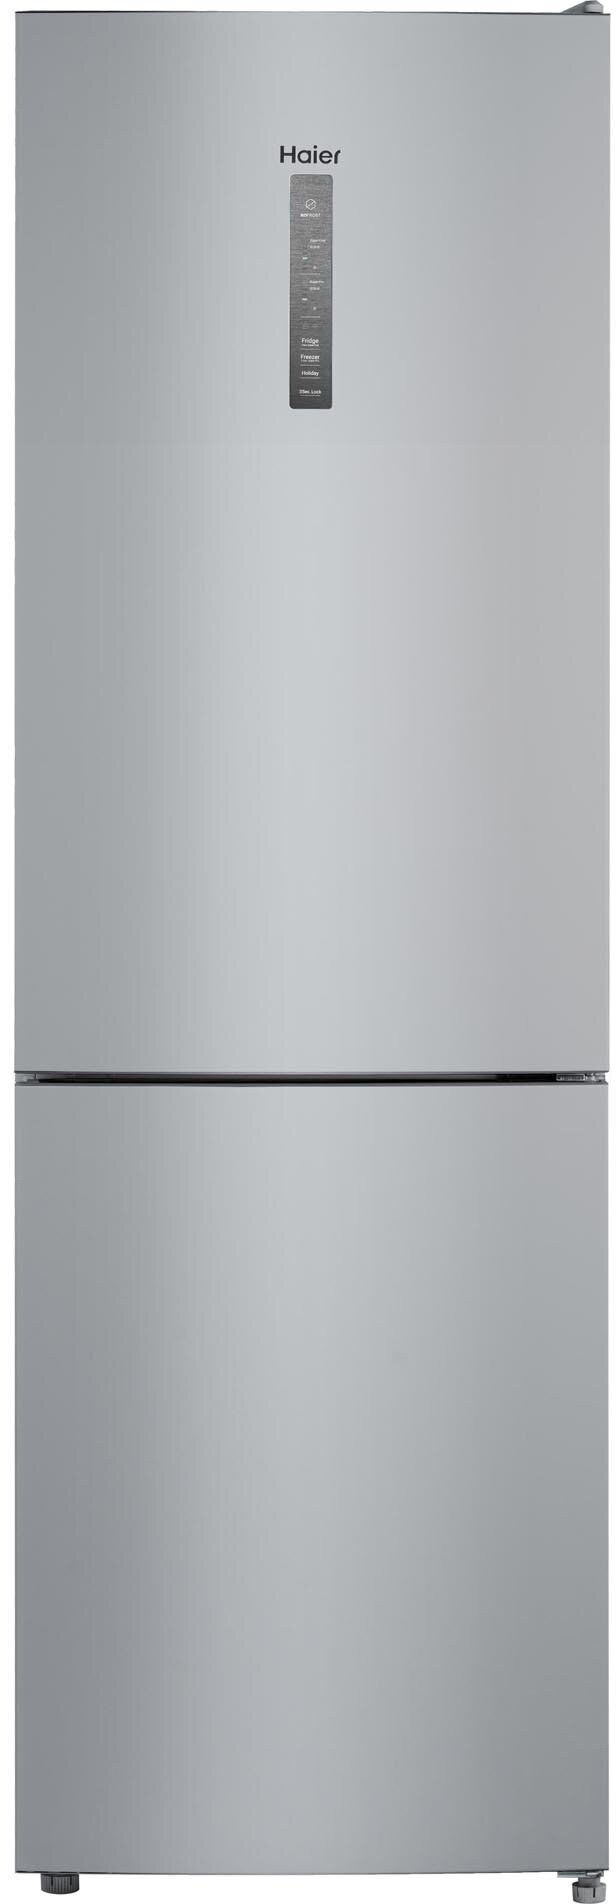 Холодильник двухкамерный Total NoFroat Haier CEF535ASD